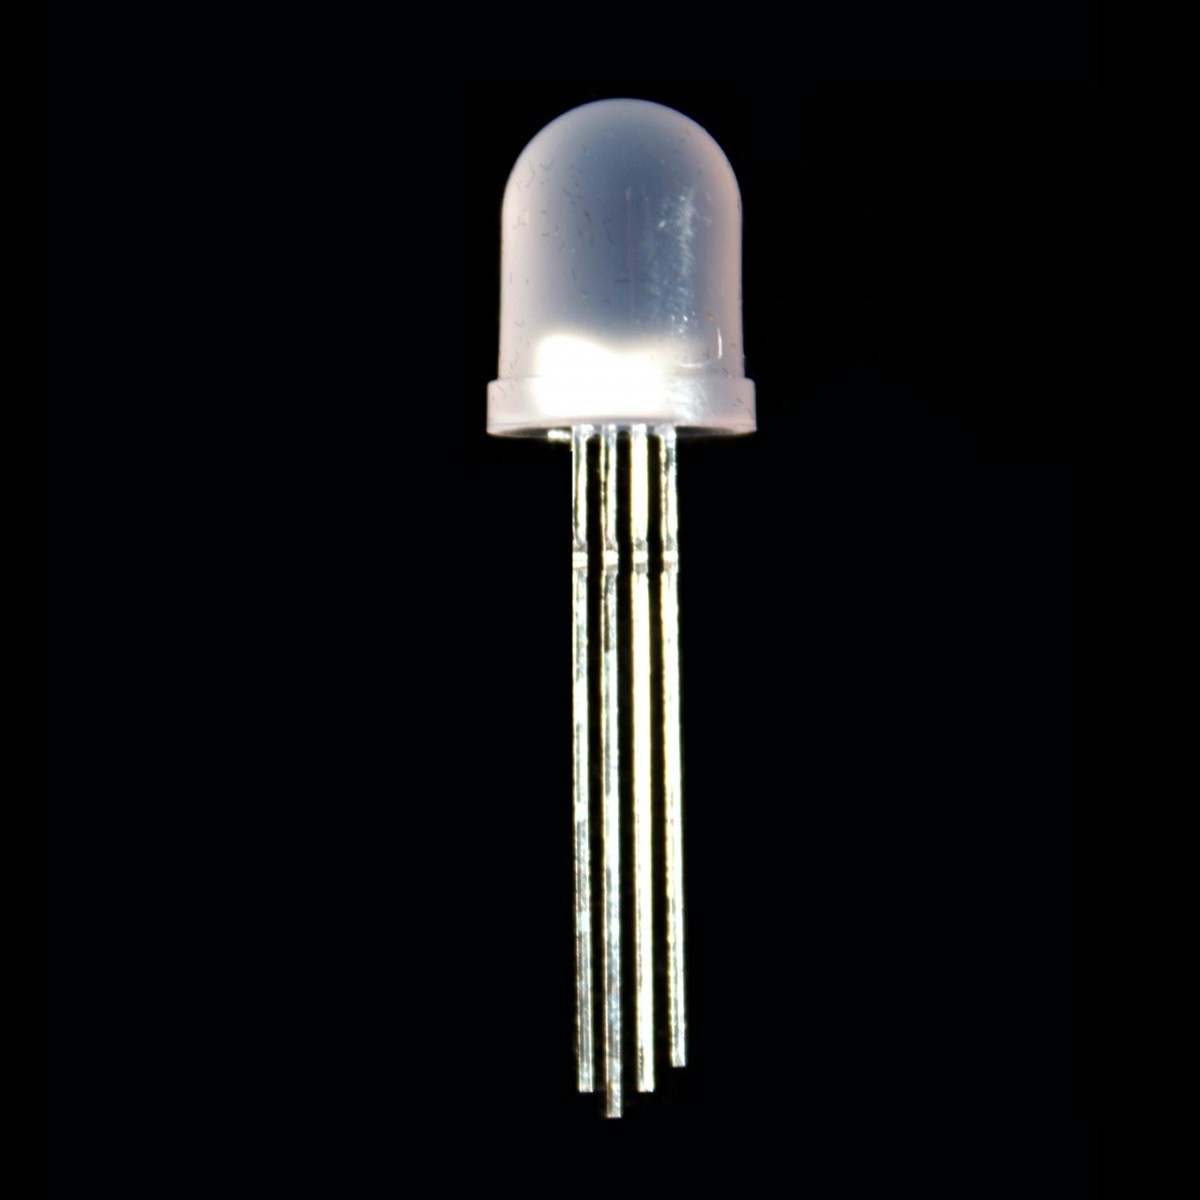 LED Jumbo 8mm Verbreitet RGB Kathode 